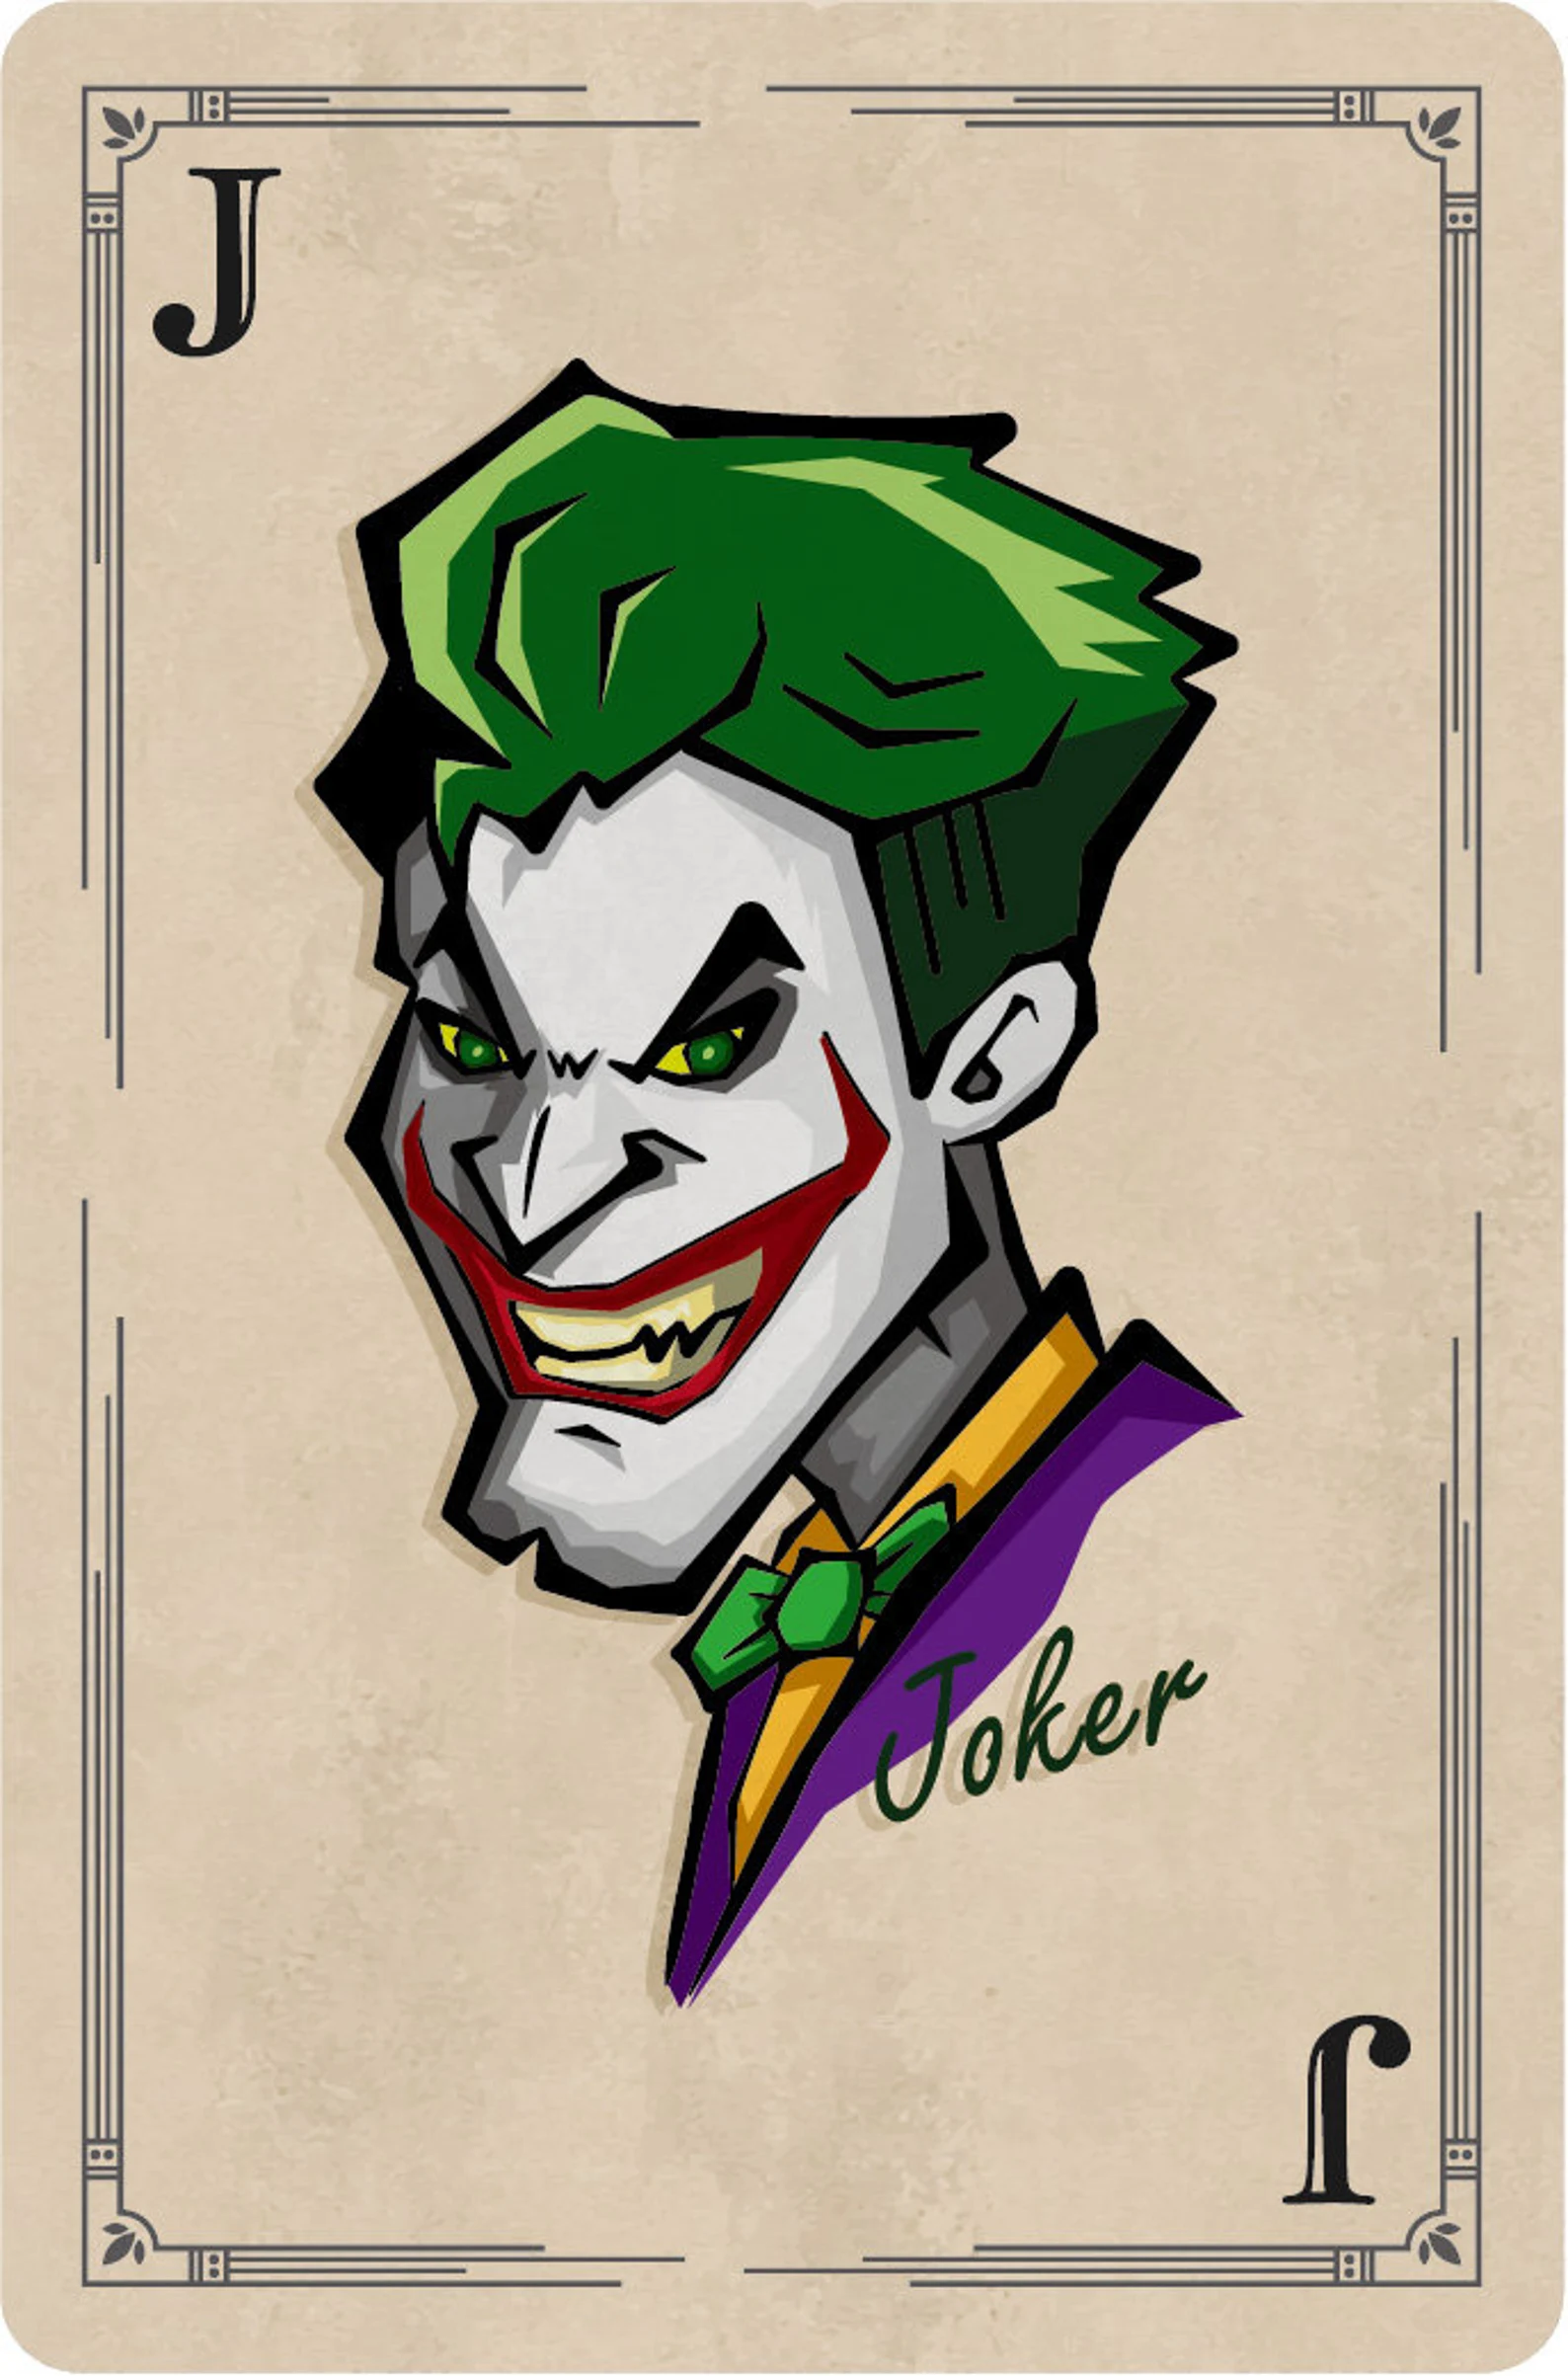 Beige background with green hair Joker.